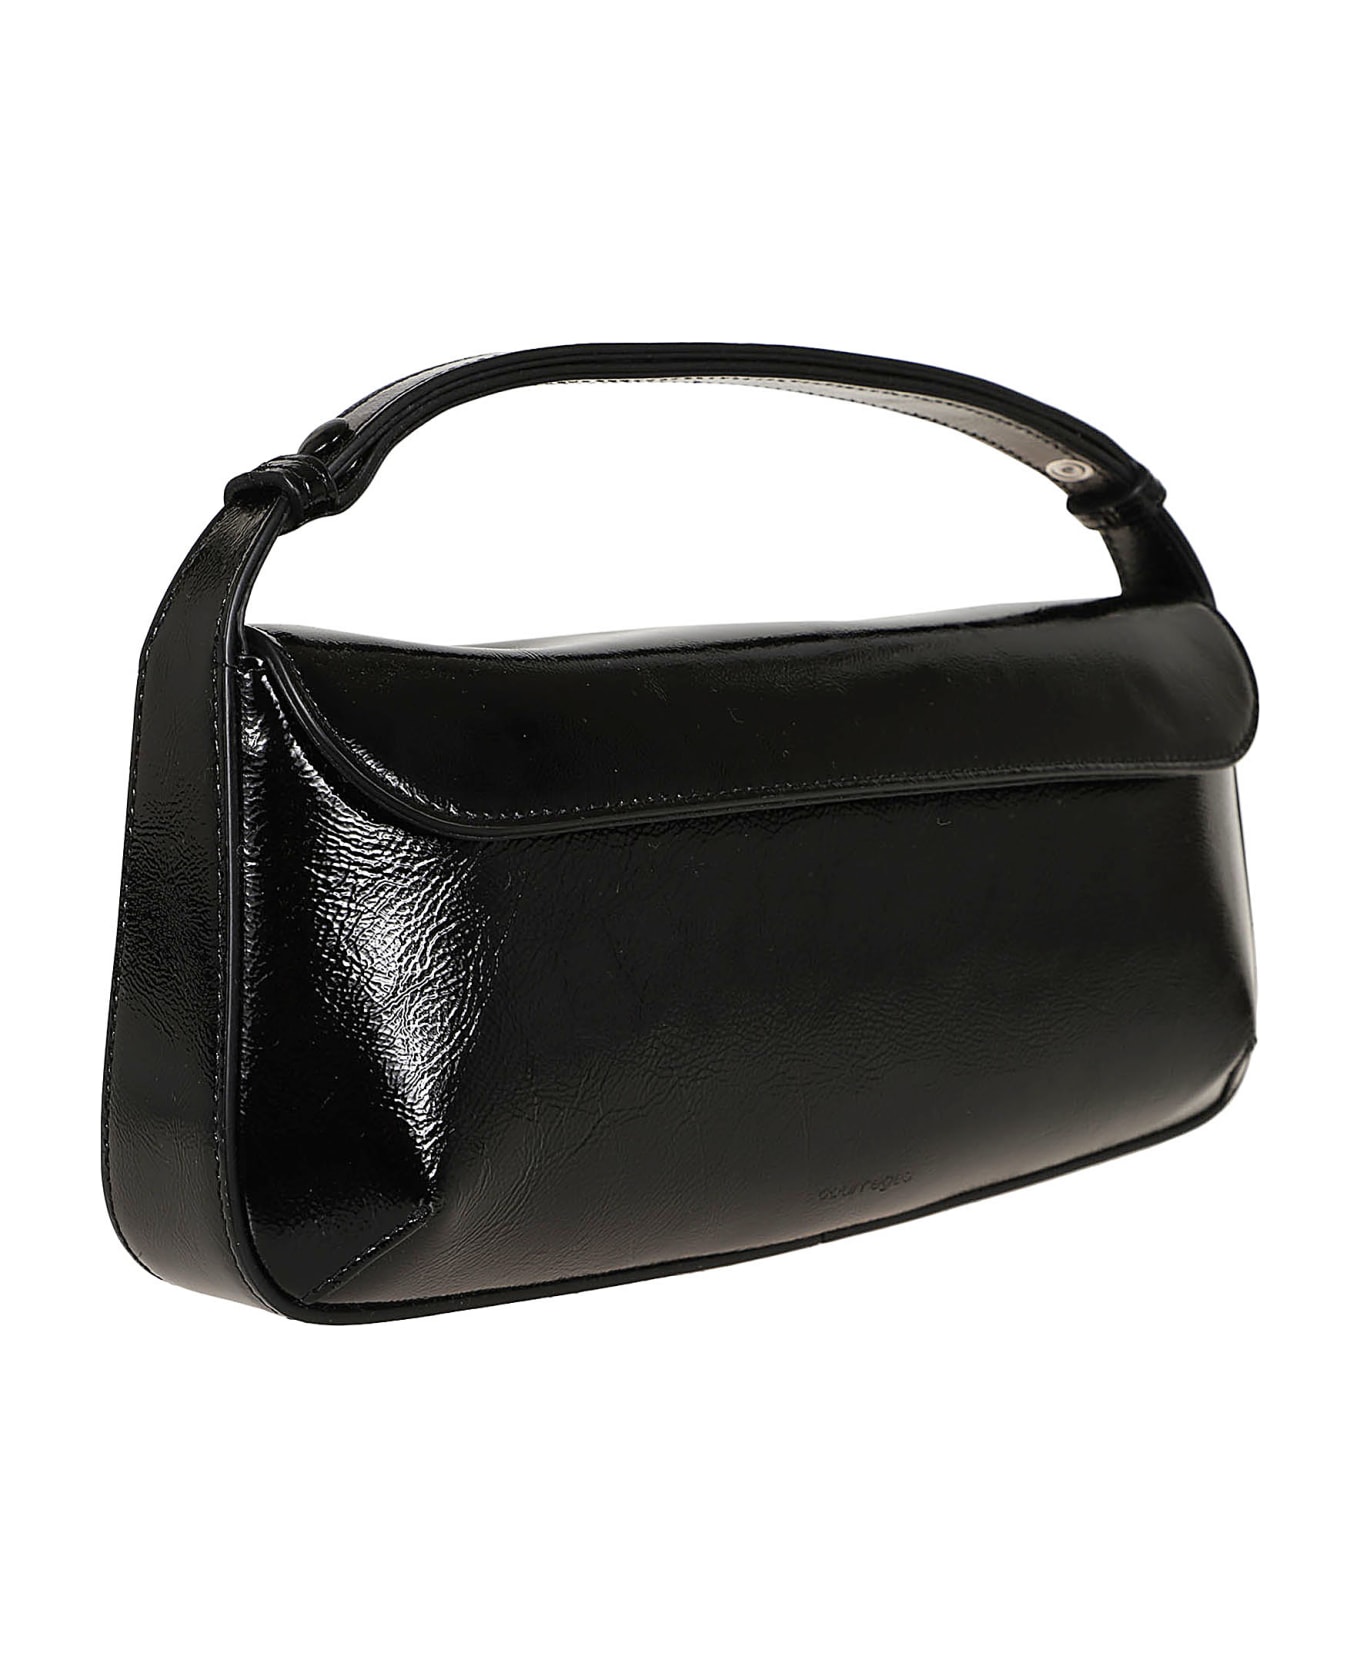 Courrèges Sleek Naplack Leather Baguette Bag - Black ショルダーバッグ